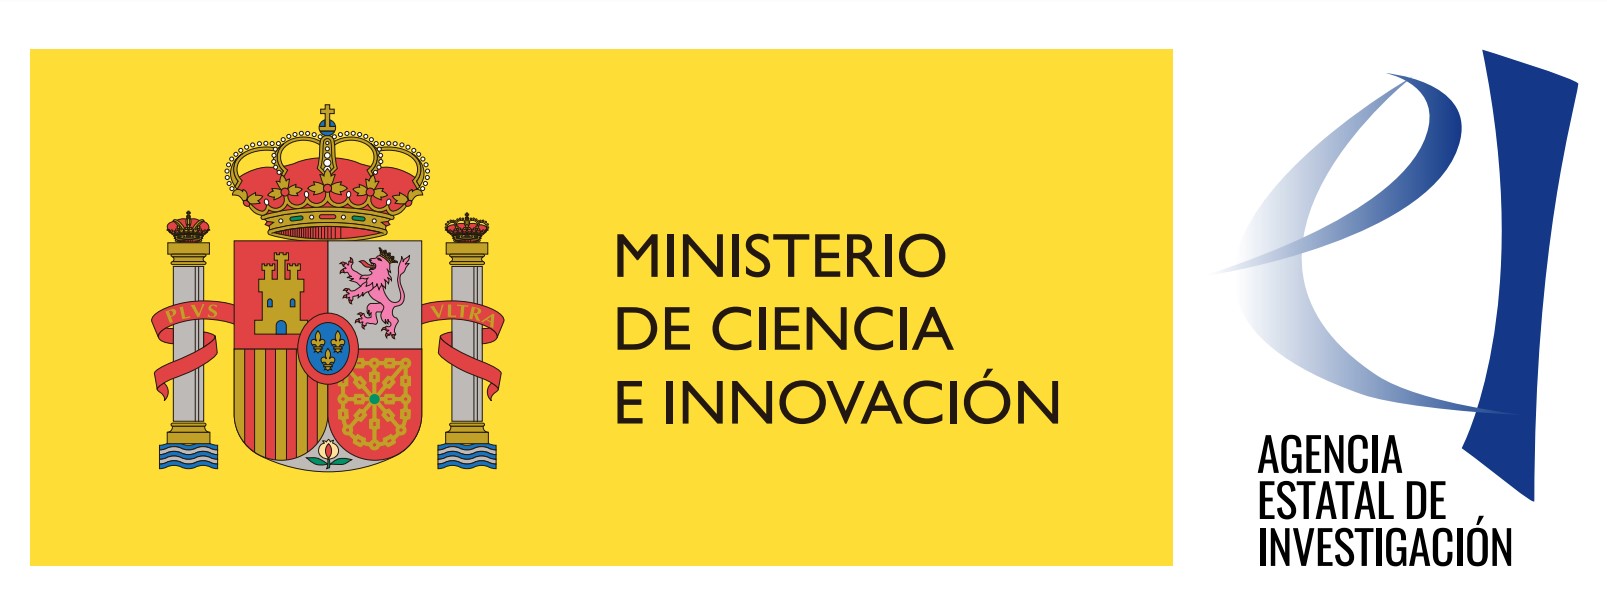 ministerio de ciencia e innovación 